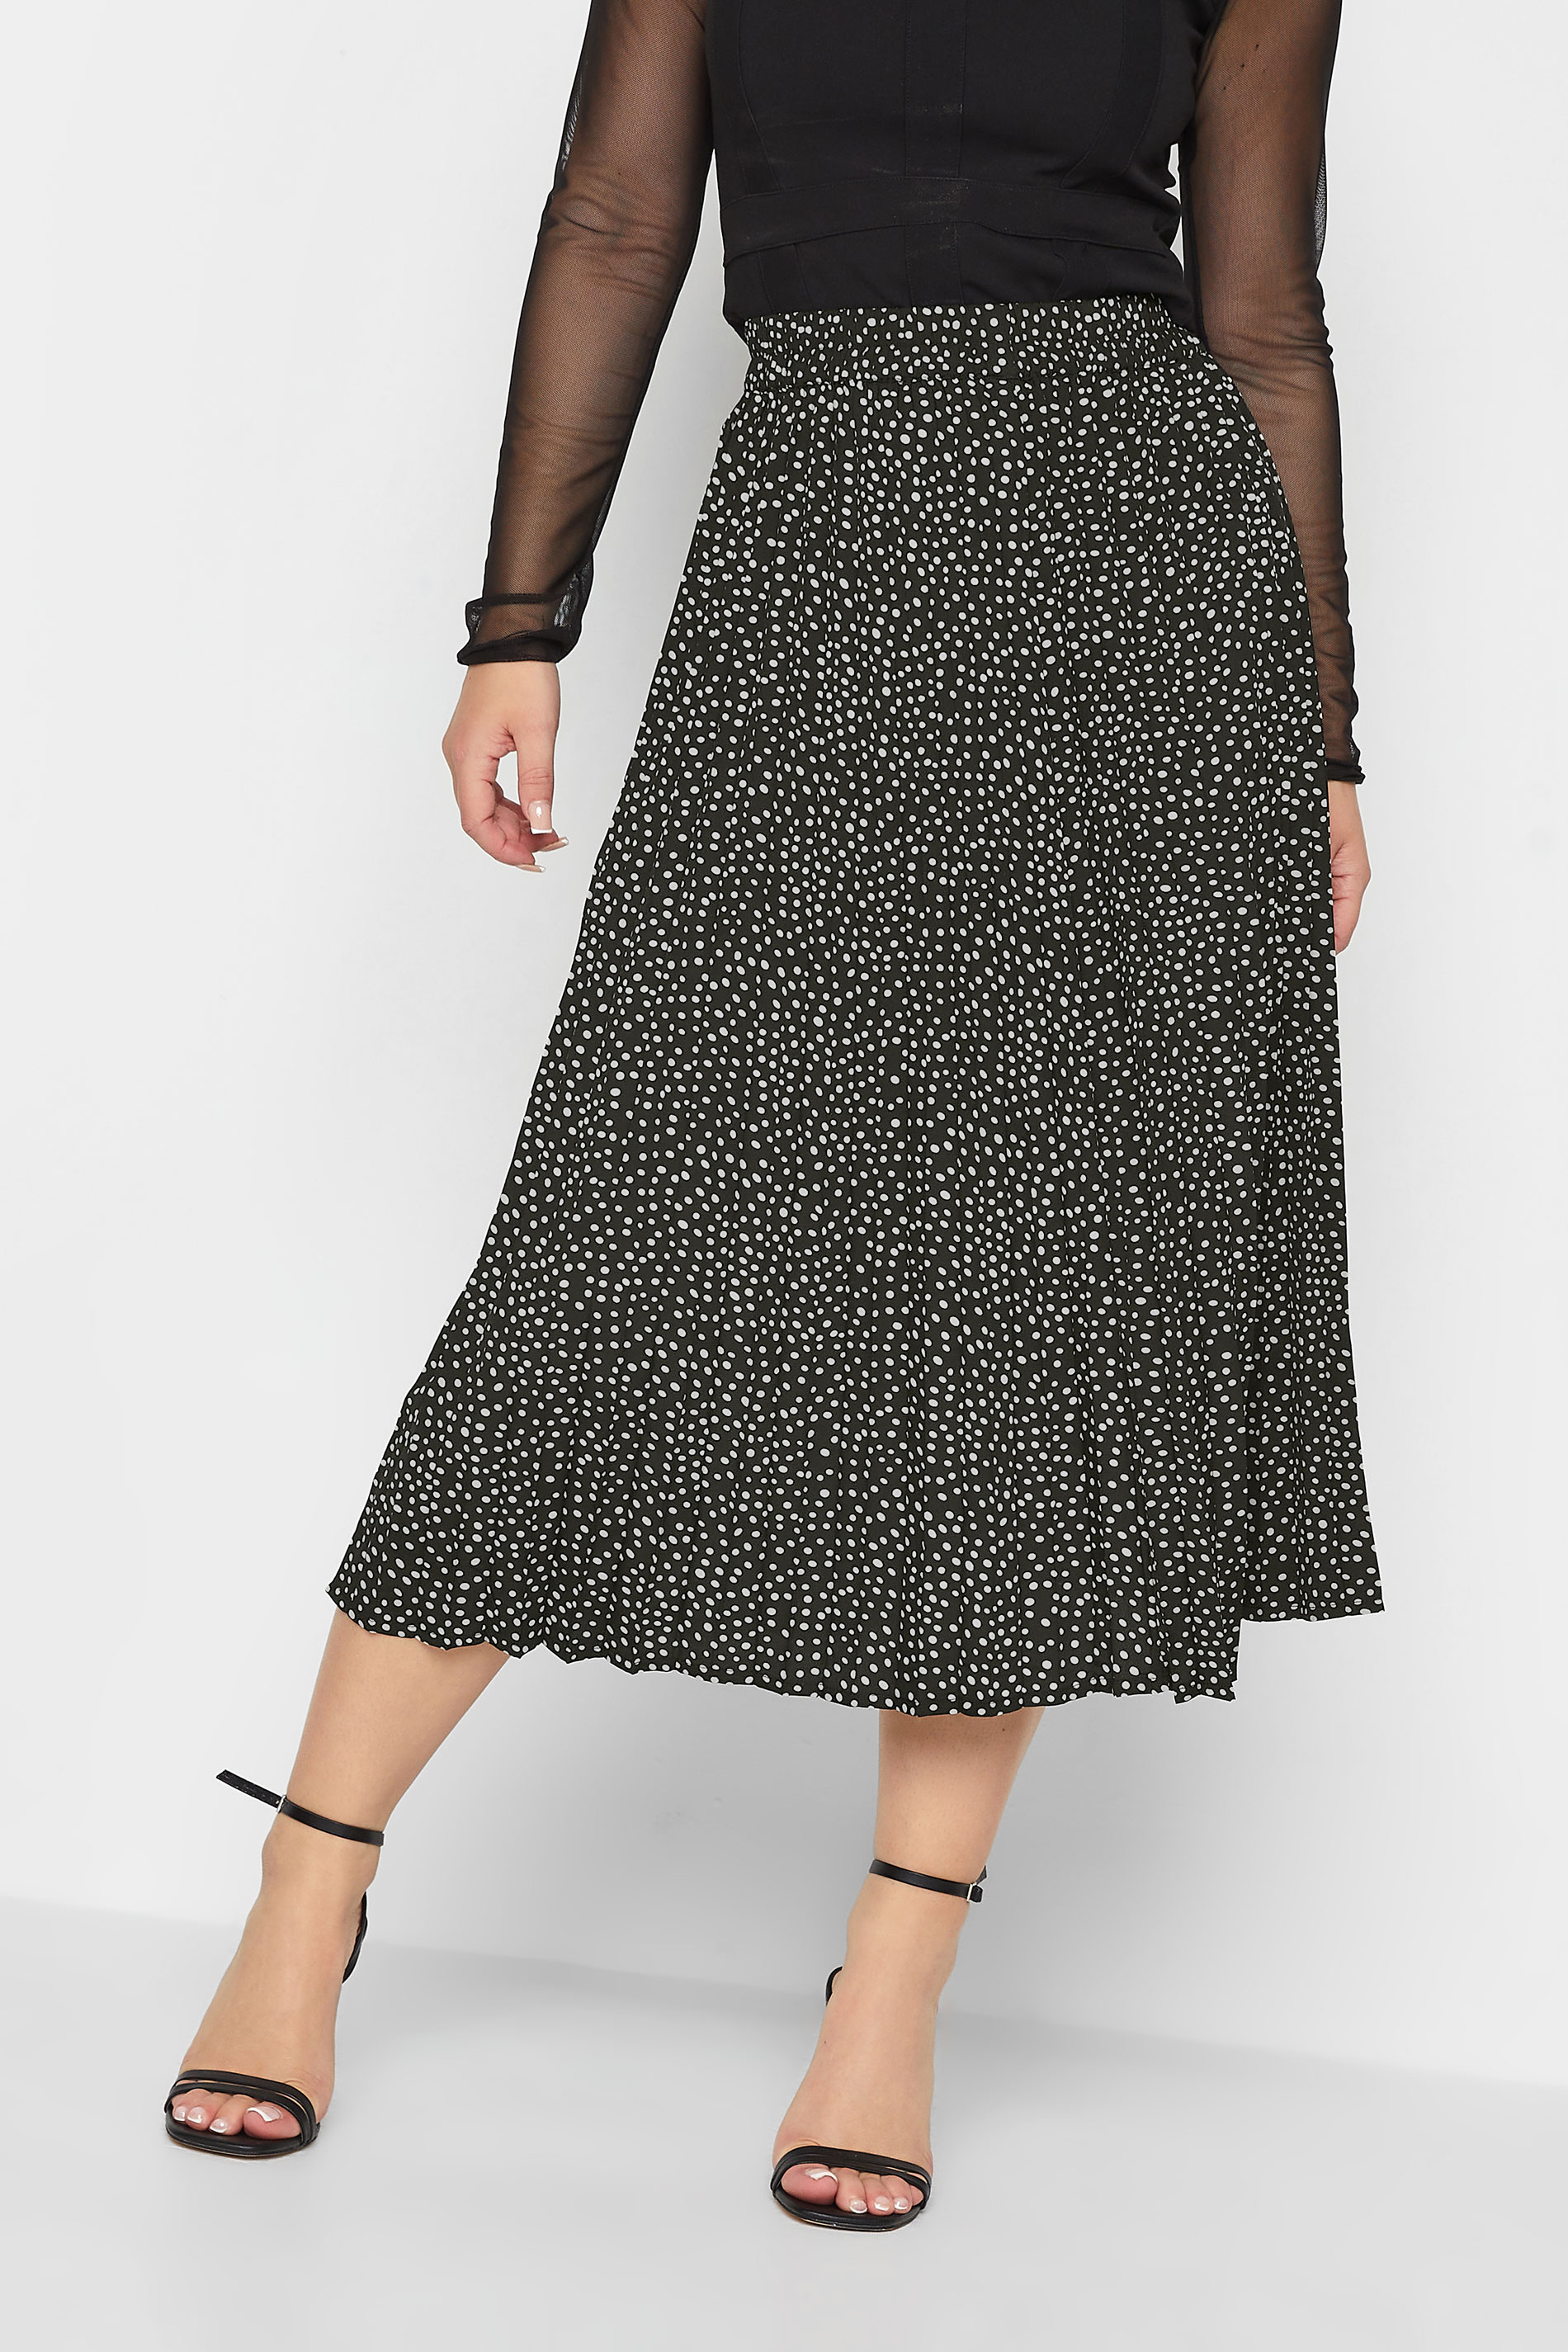 PixieGirl Black Spot Print Pleated Skirt | PixieGirl 1